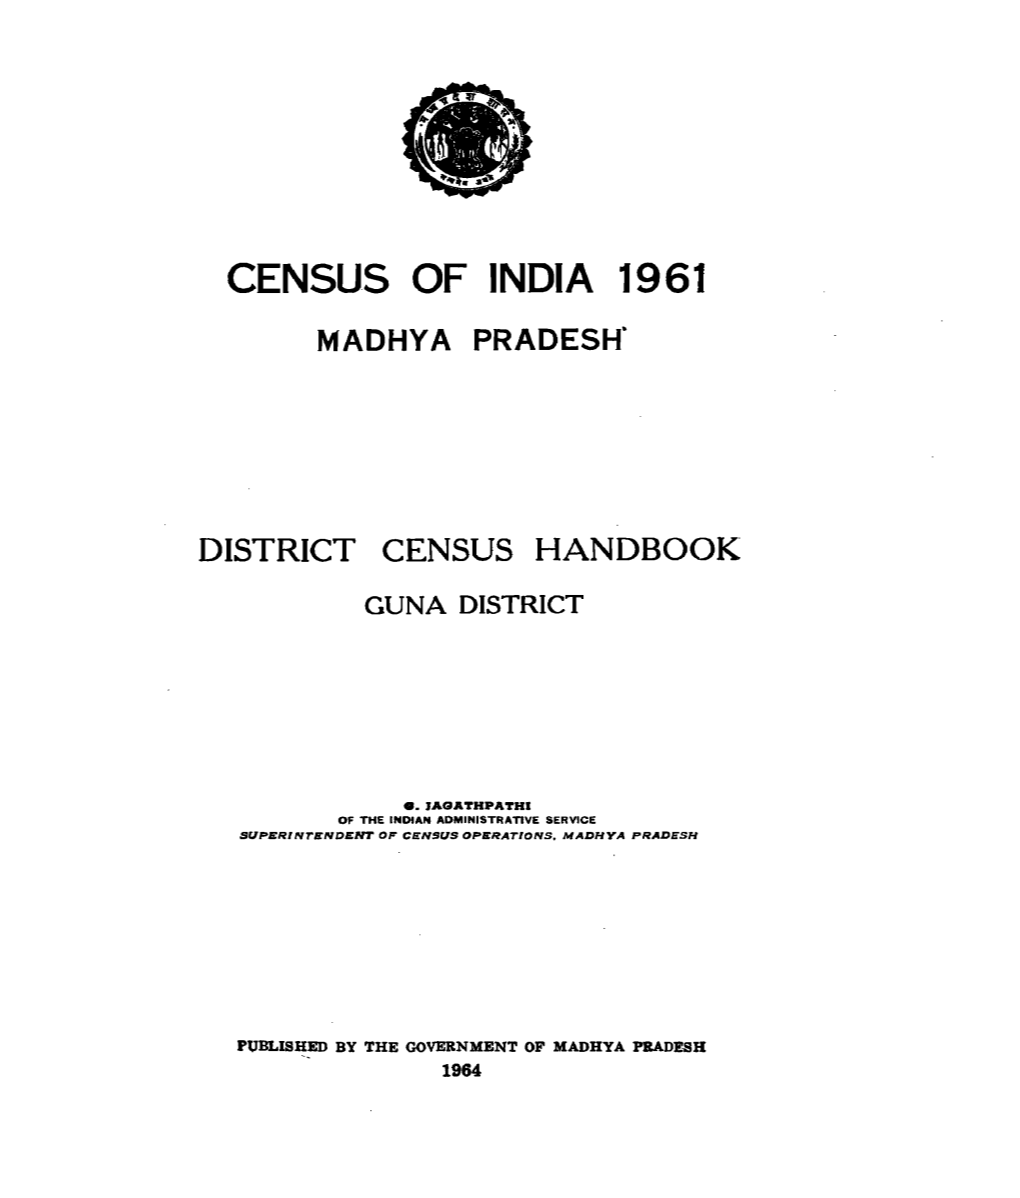 District Census Handbook, Guna